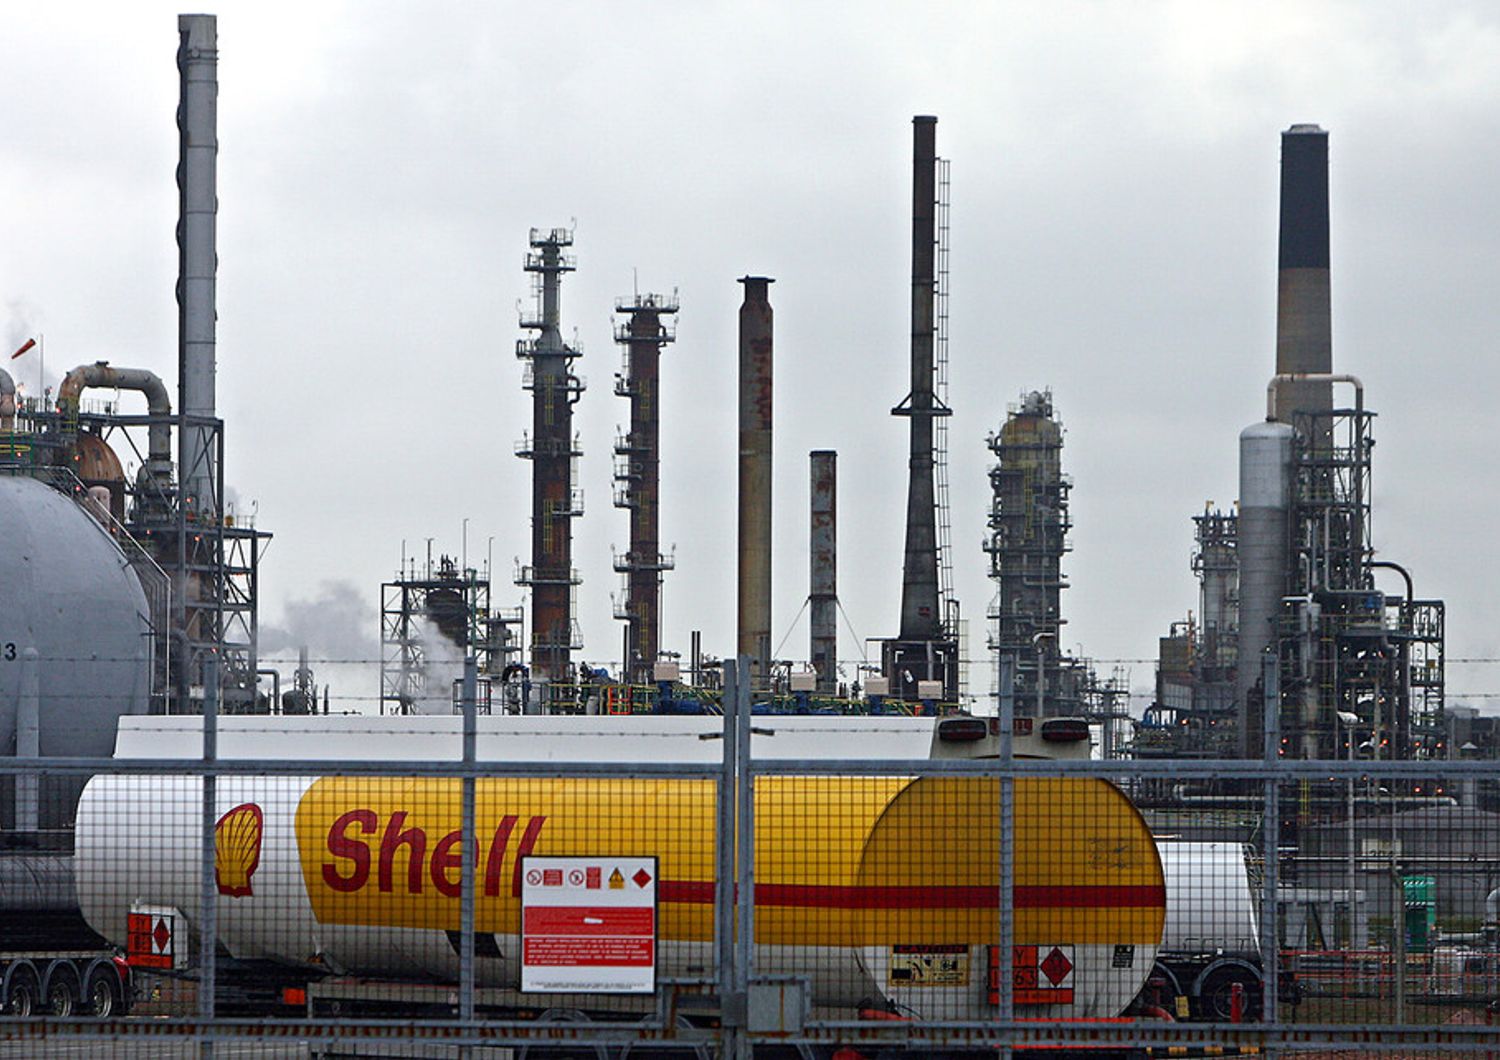 Stabilimento Shell in Scozia